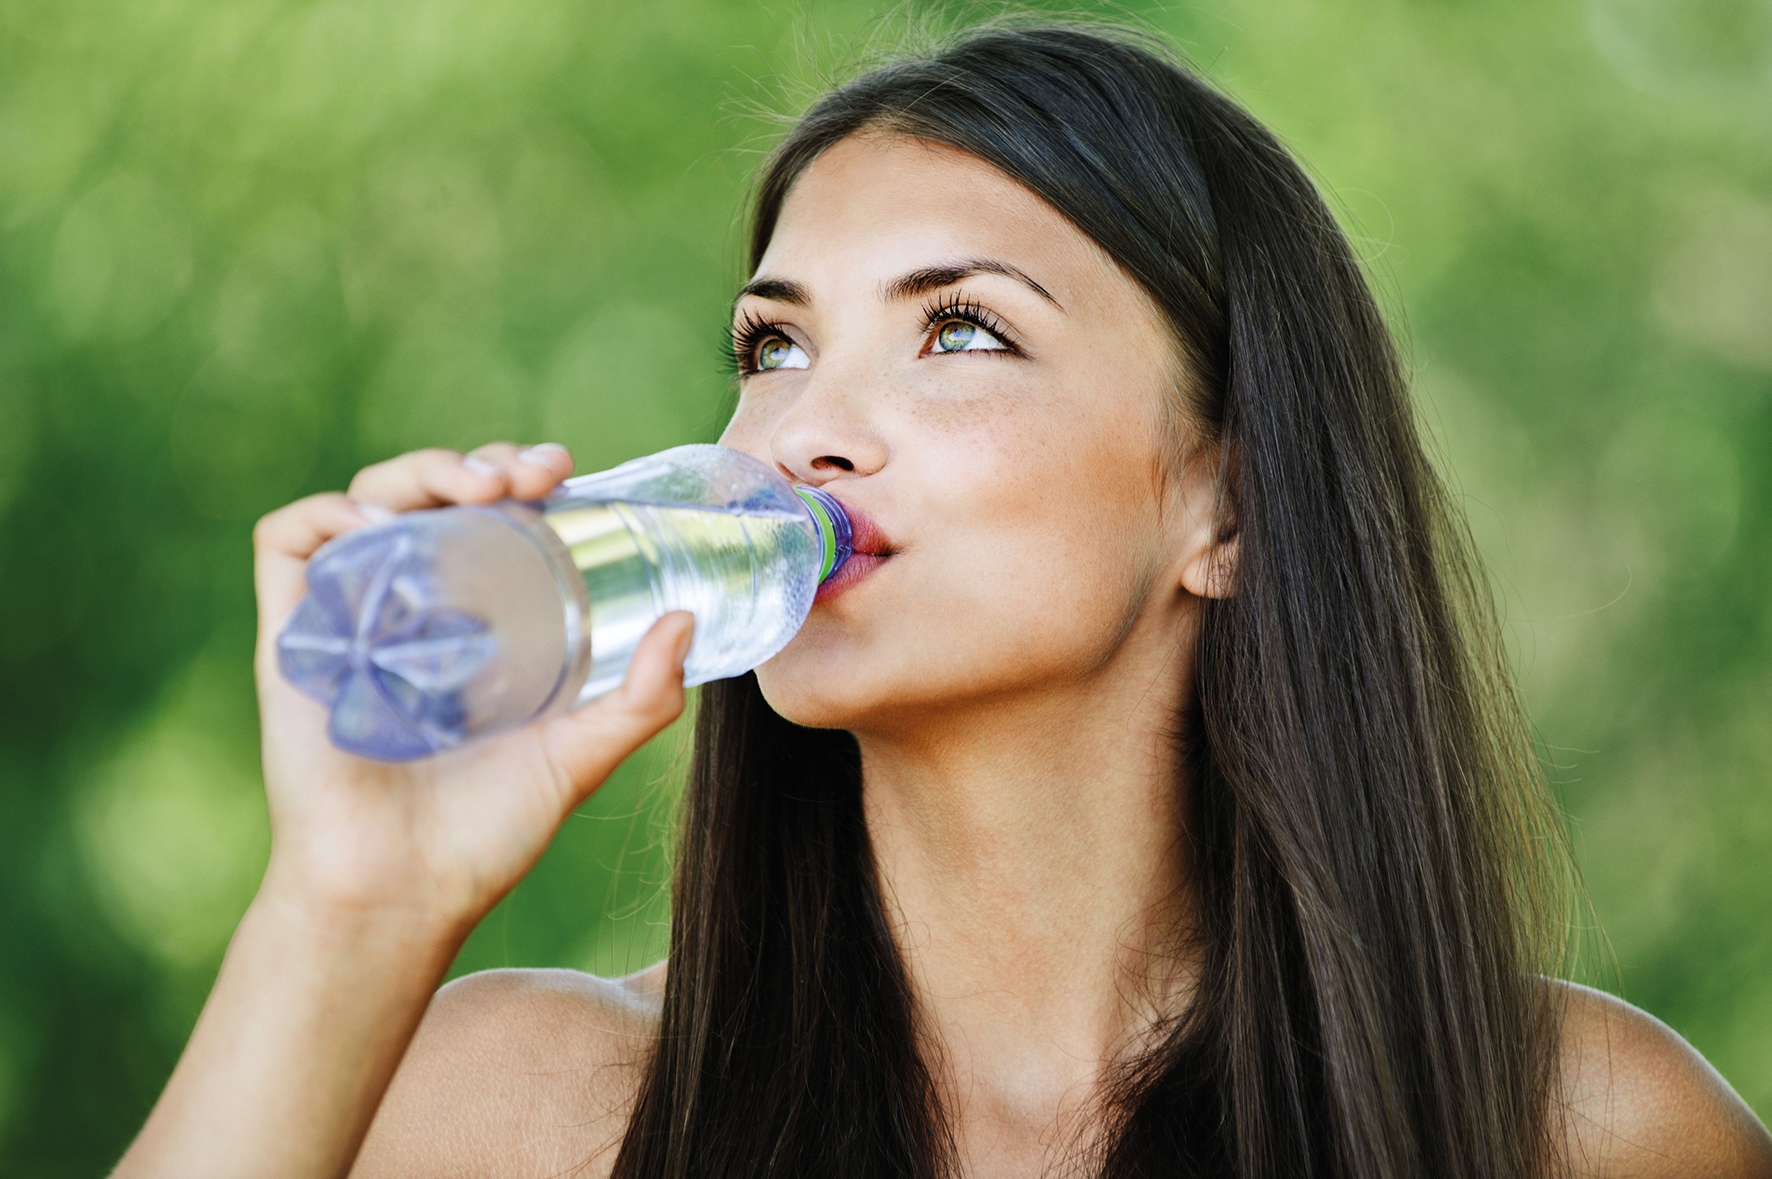 Горячая вода для здоровья. Девушка пьет воду. Девушка пьет воду из бутылки. Красивая девушка со стаканом воды. Девушка с бутылкой воды.